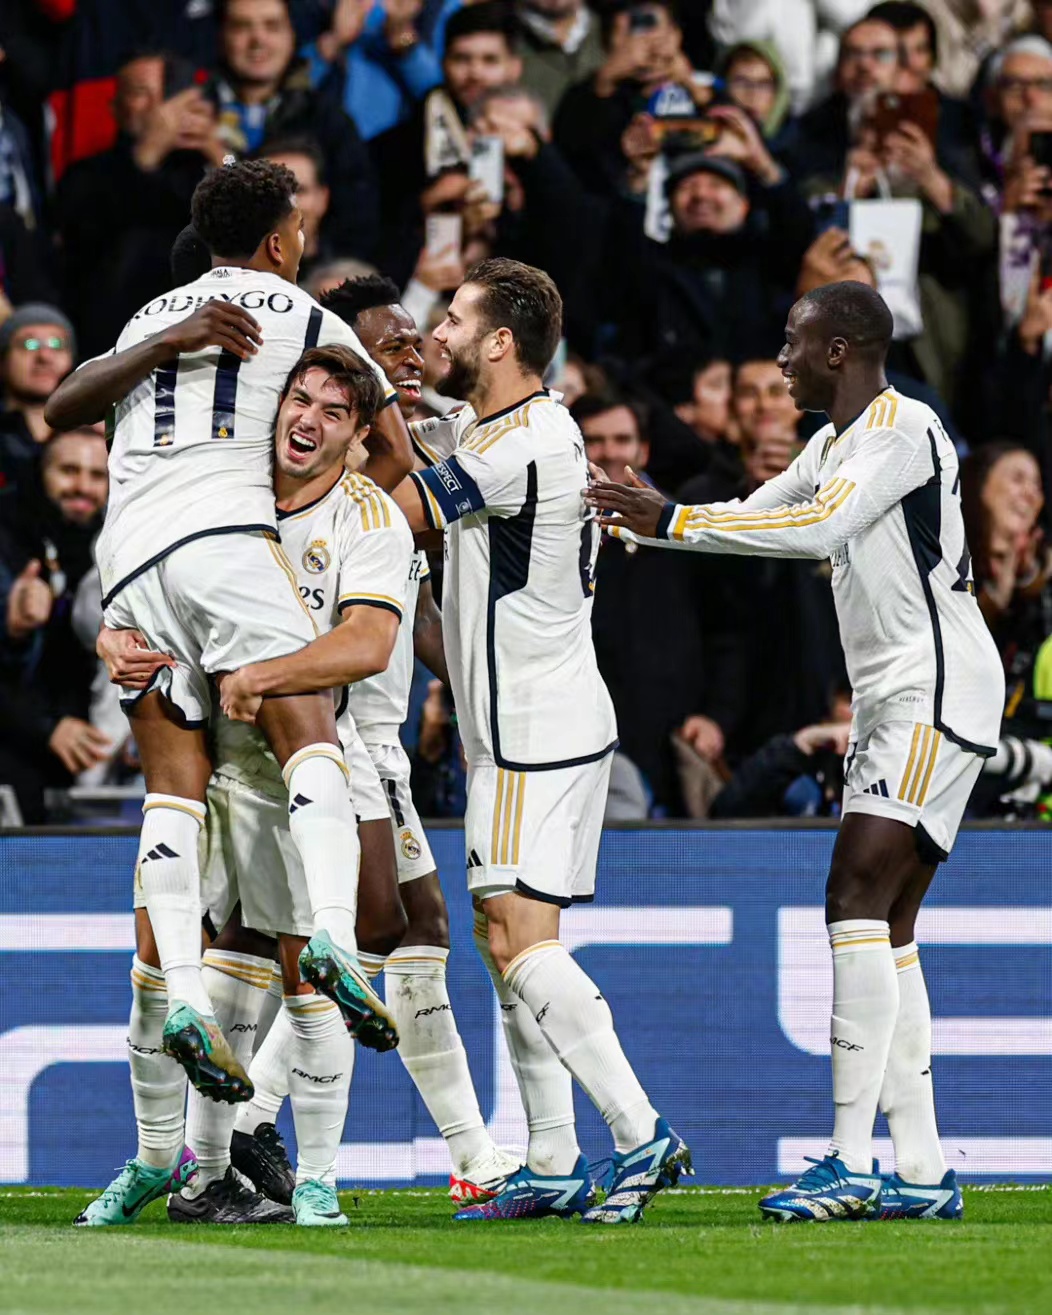 Neustrašiv, slava pod dresom Real Madrida u grupnoj fazi Lige prvaka